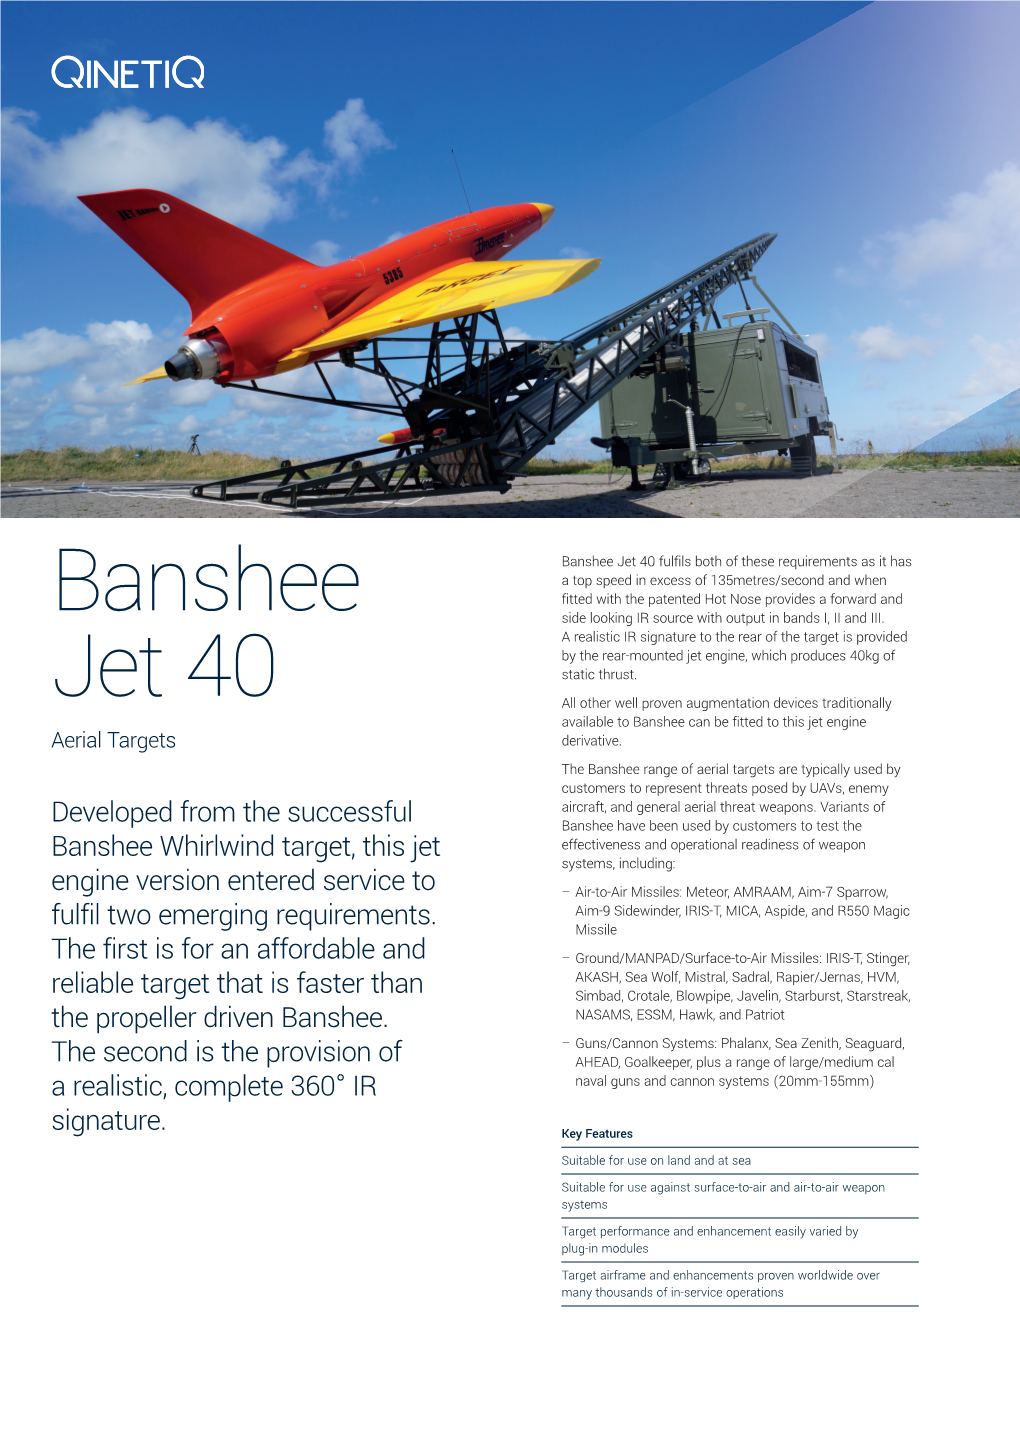 QIN0314 Product Guide Banshee Jet 40.Indd